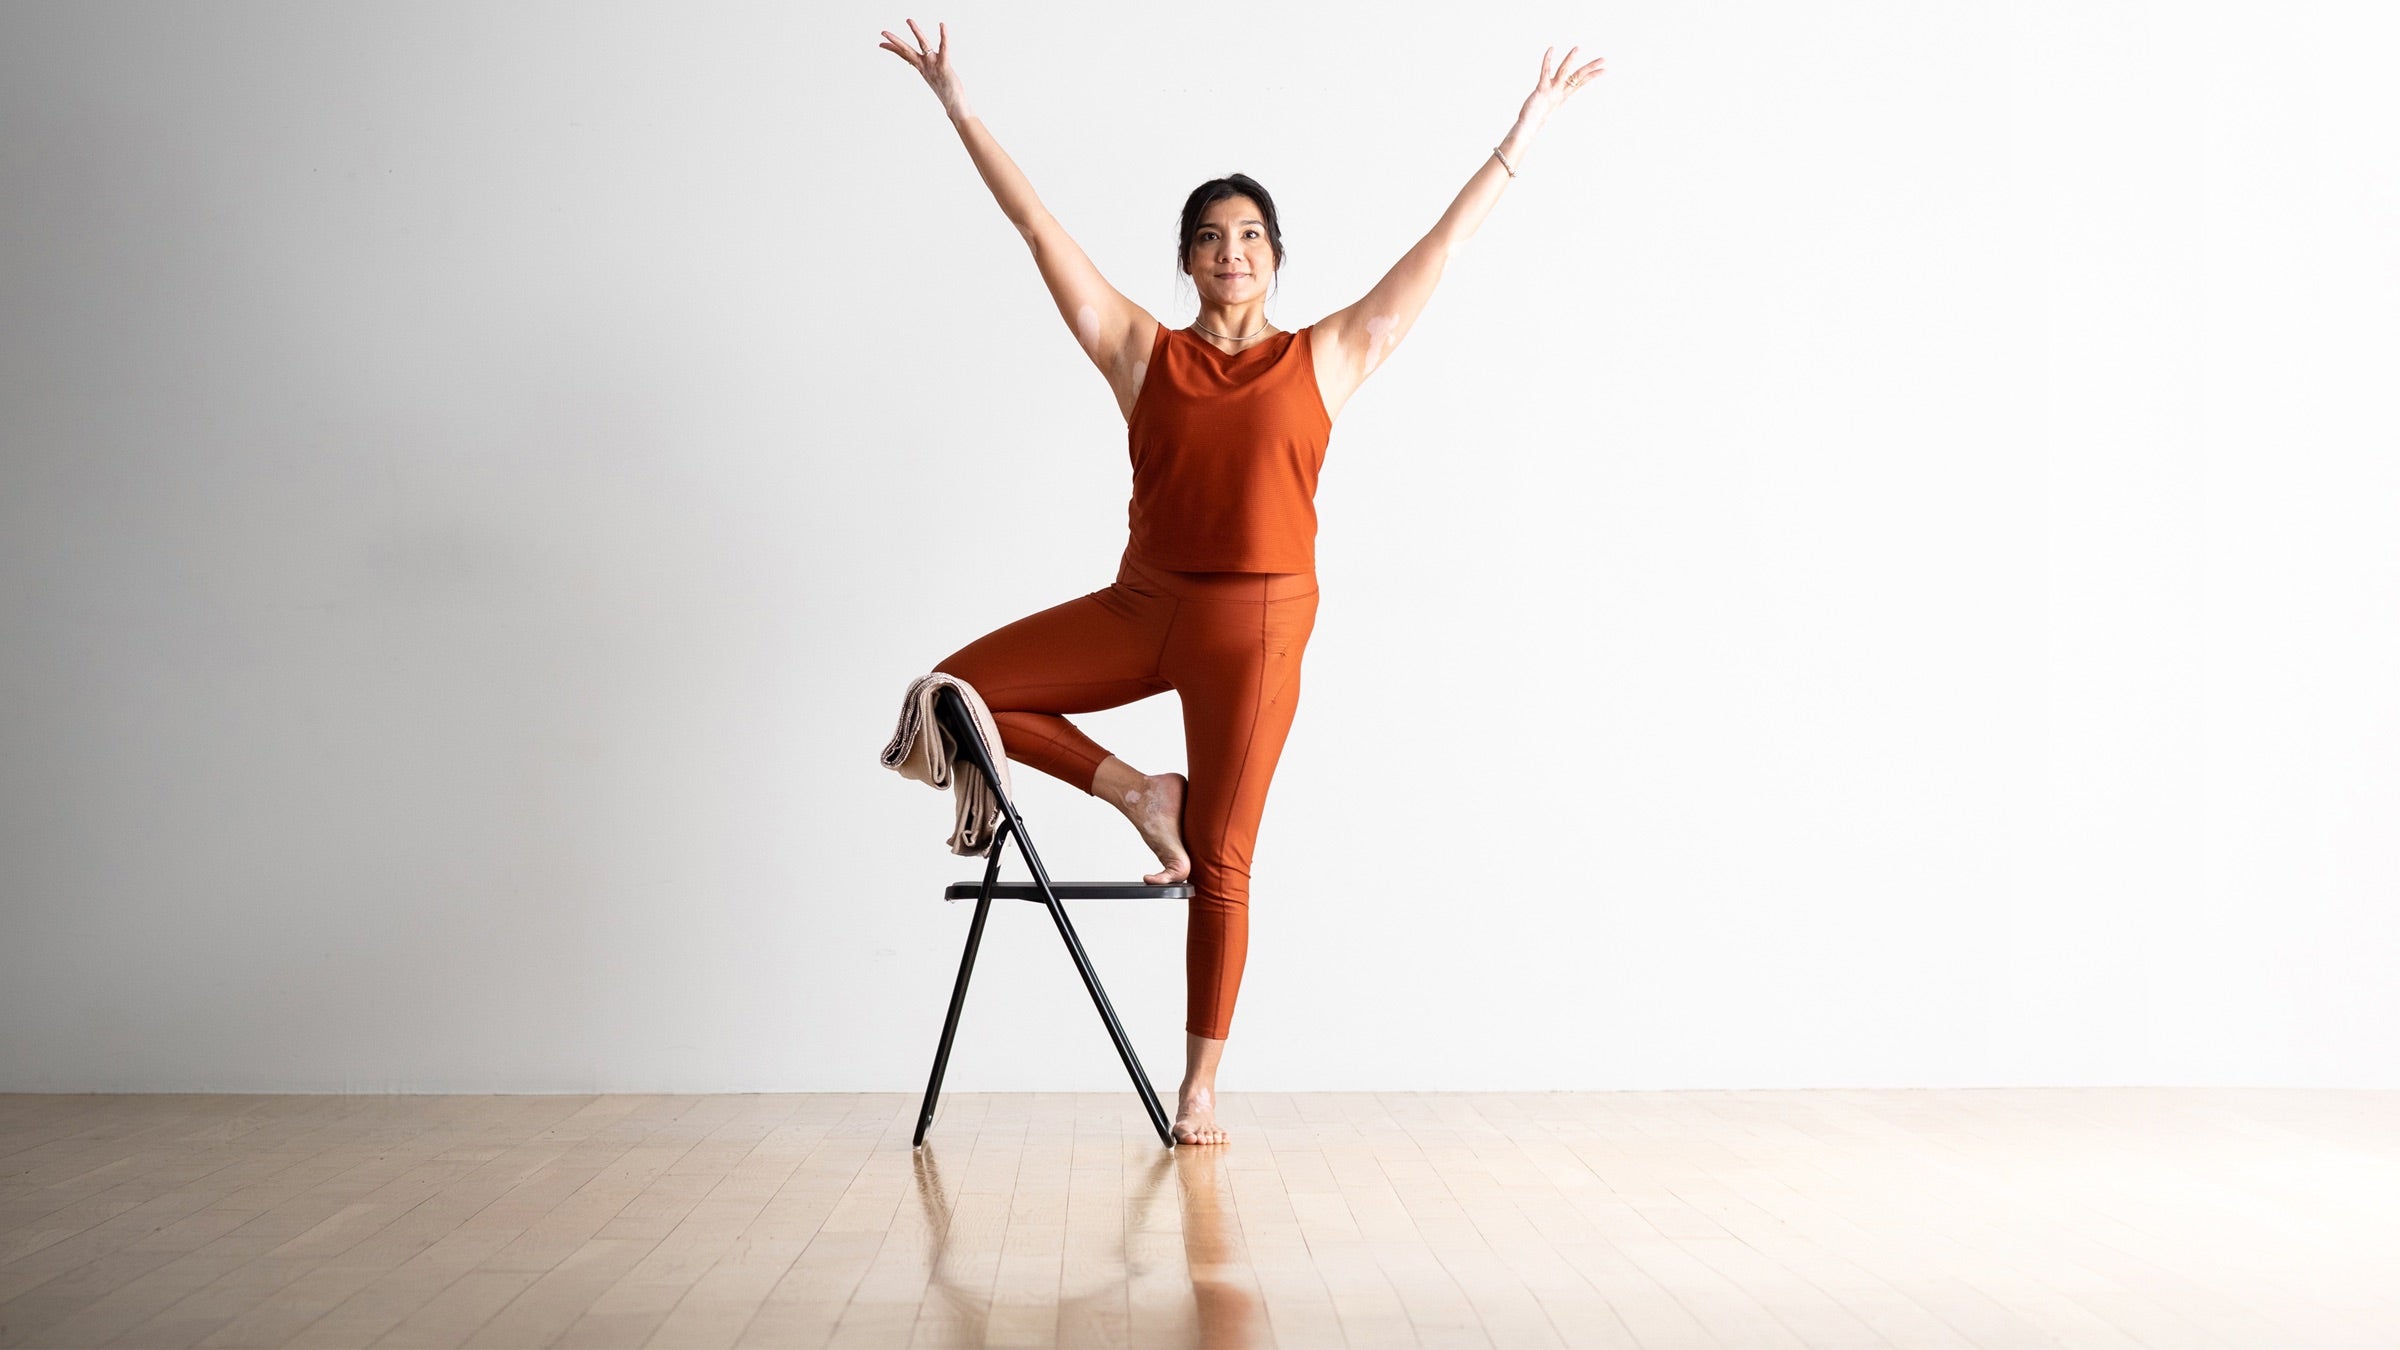 Chair Yoga for Seniors, Beginner Friendly | Living Maples